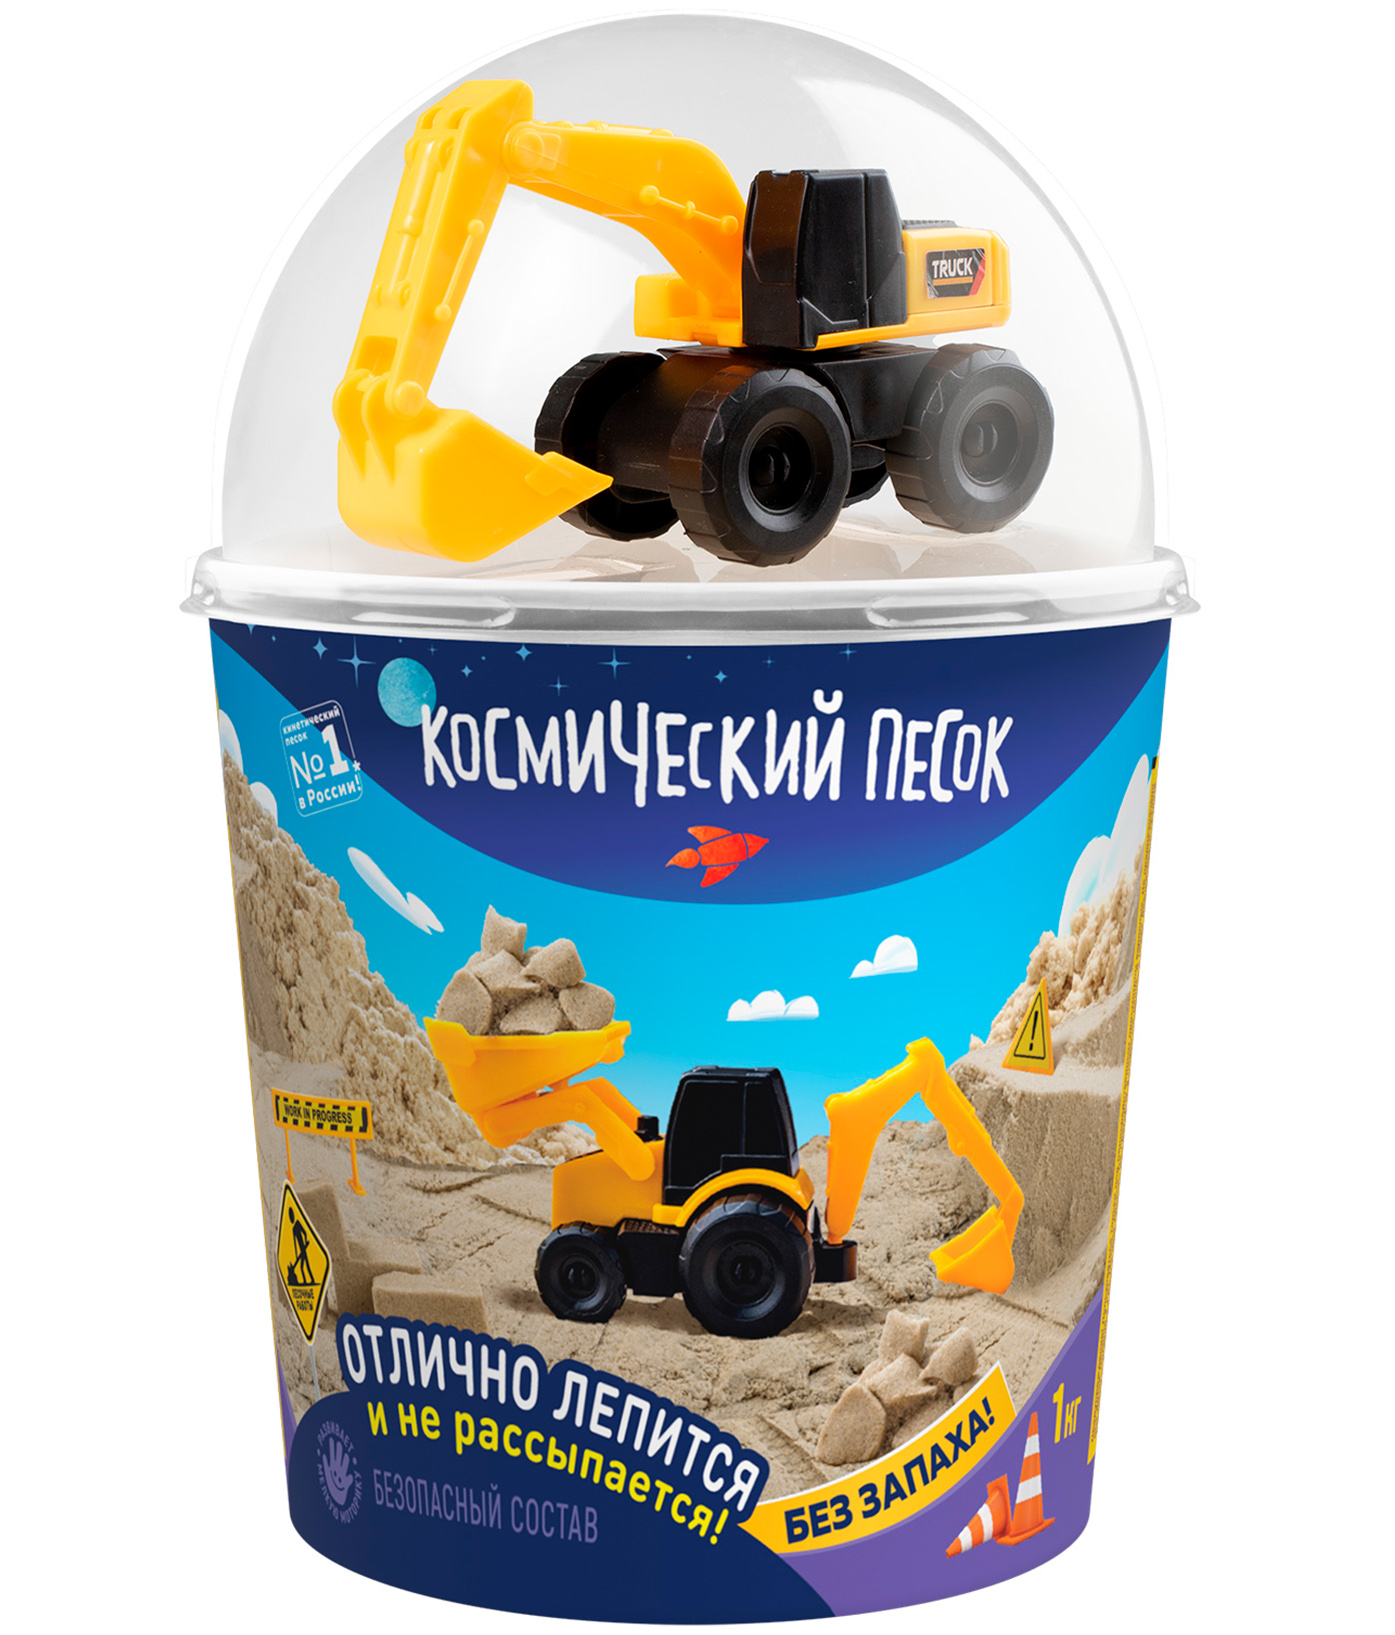 Кинетический песок Космический песок песочный, в наборе с машинкой-экскаватором, с 3 лет кинетический песок космический песок песочный в наборе с машинкой трактором с 3 лет